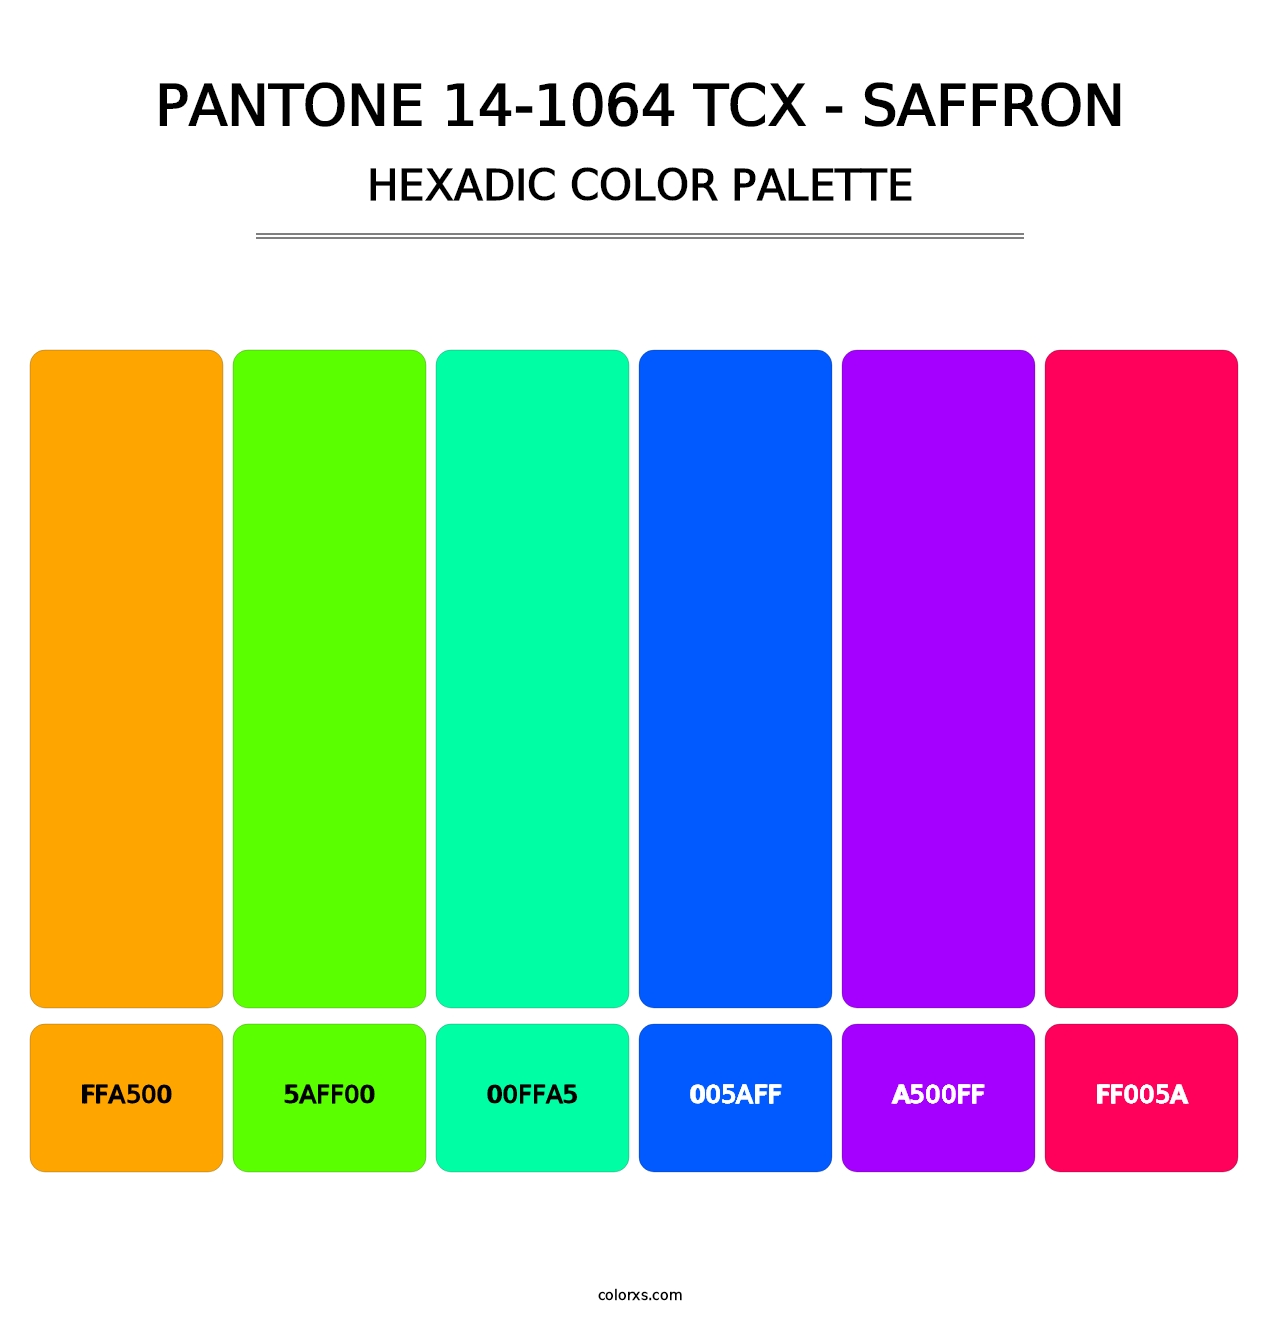 PANTONE 14-1064 TCX - Saffron - Hexadic Color Palette